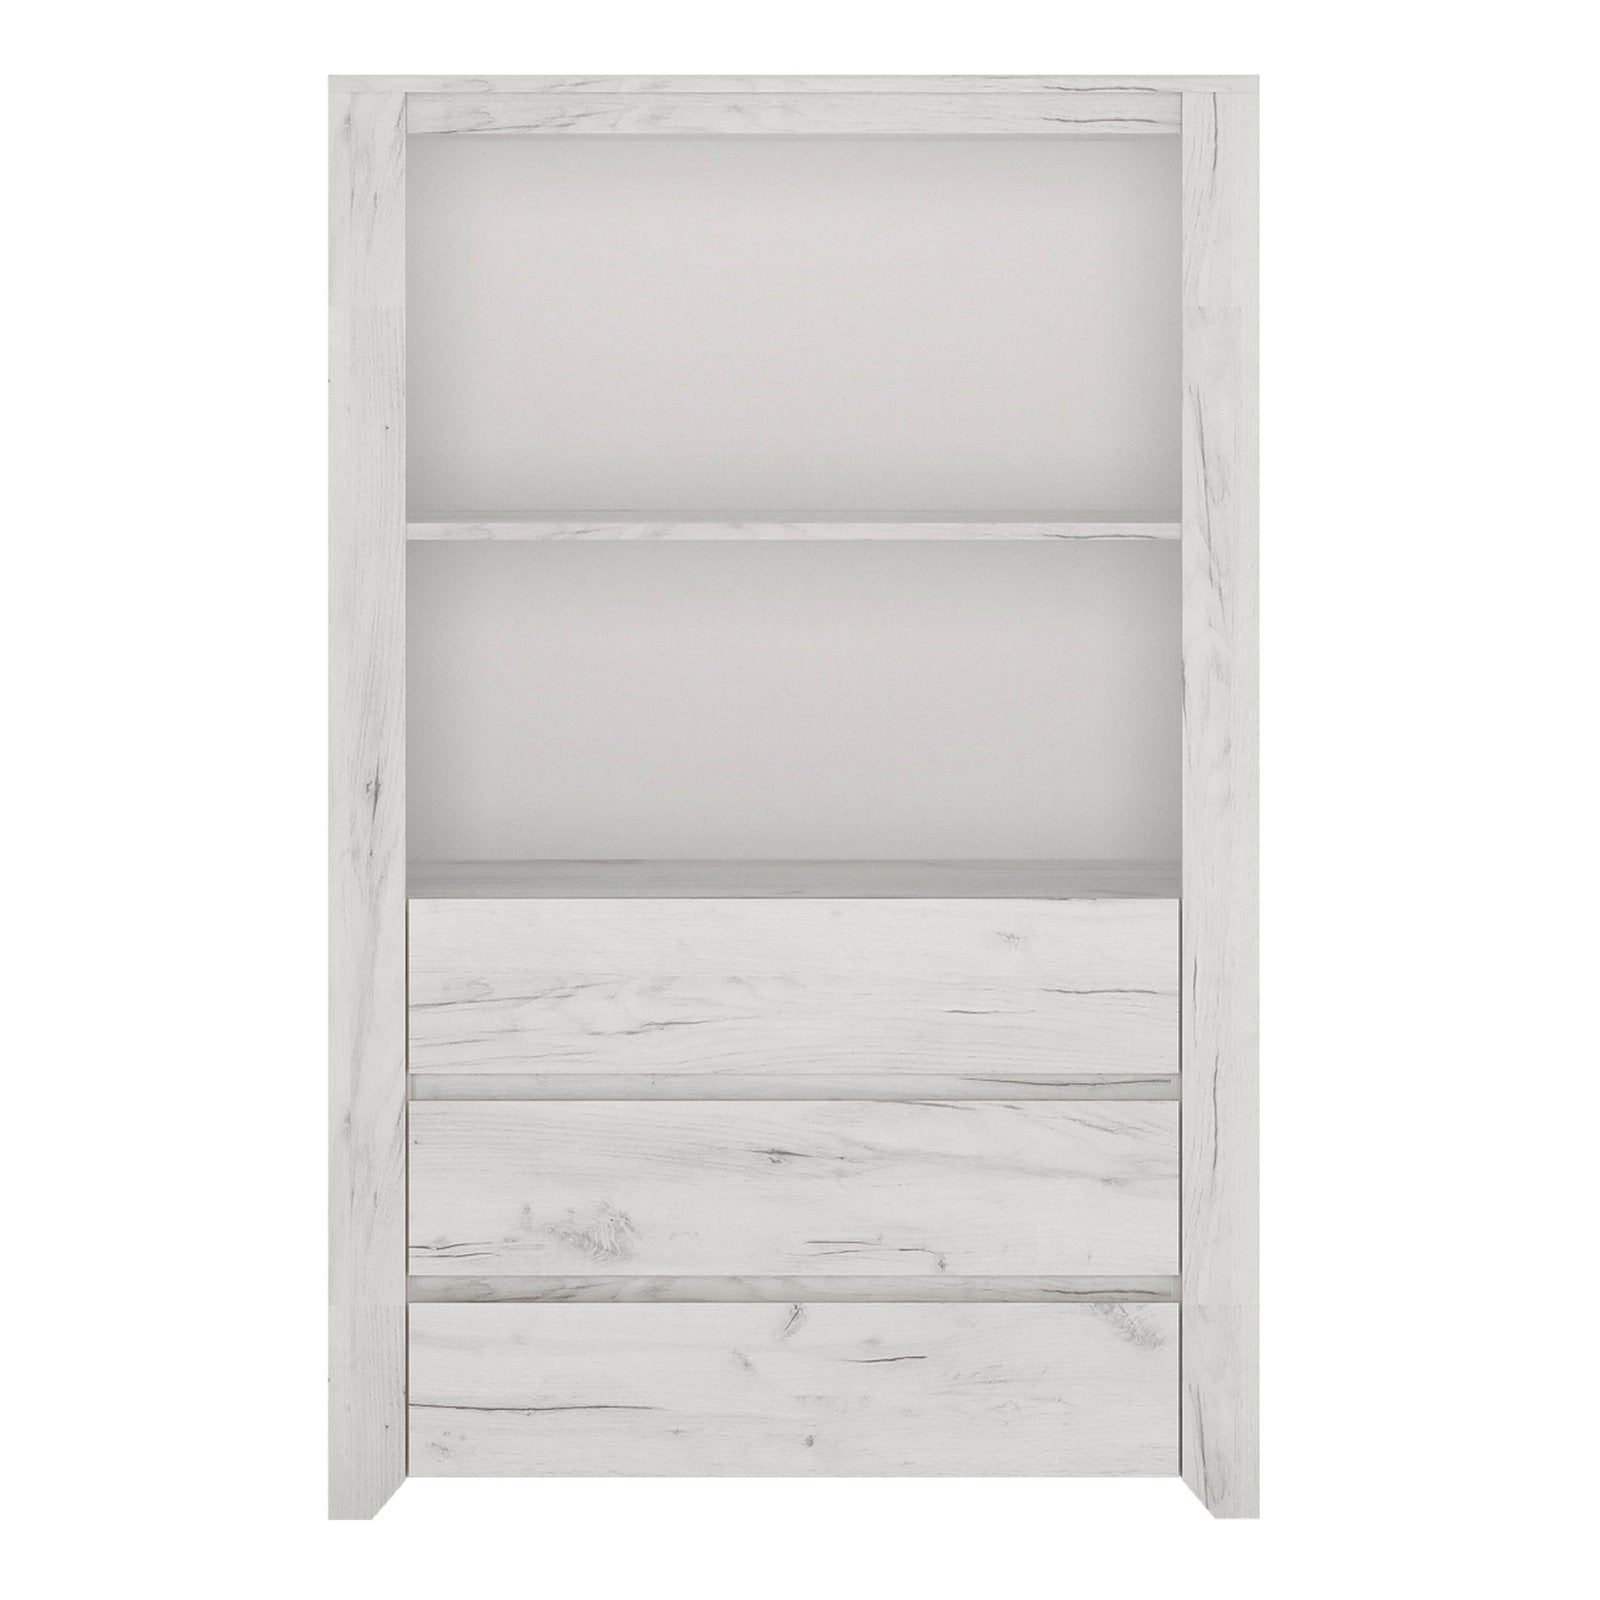 Angel 3 Drawer Cupboard with Open Shelf in White Craft Oak